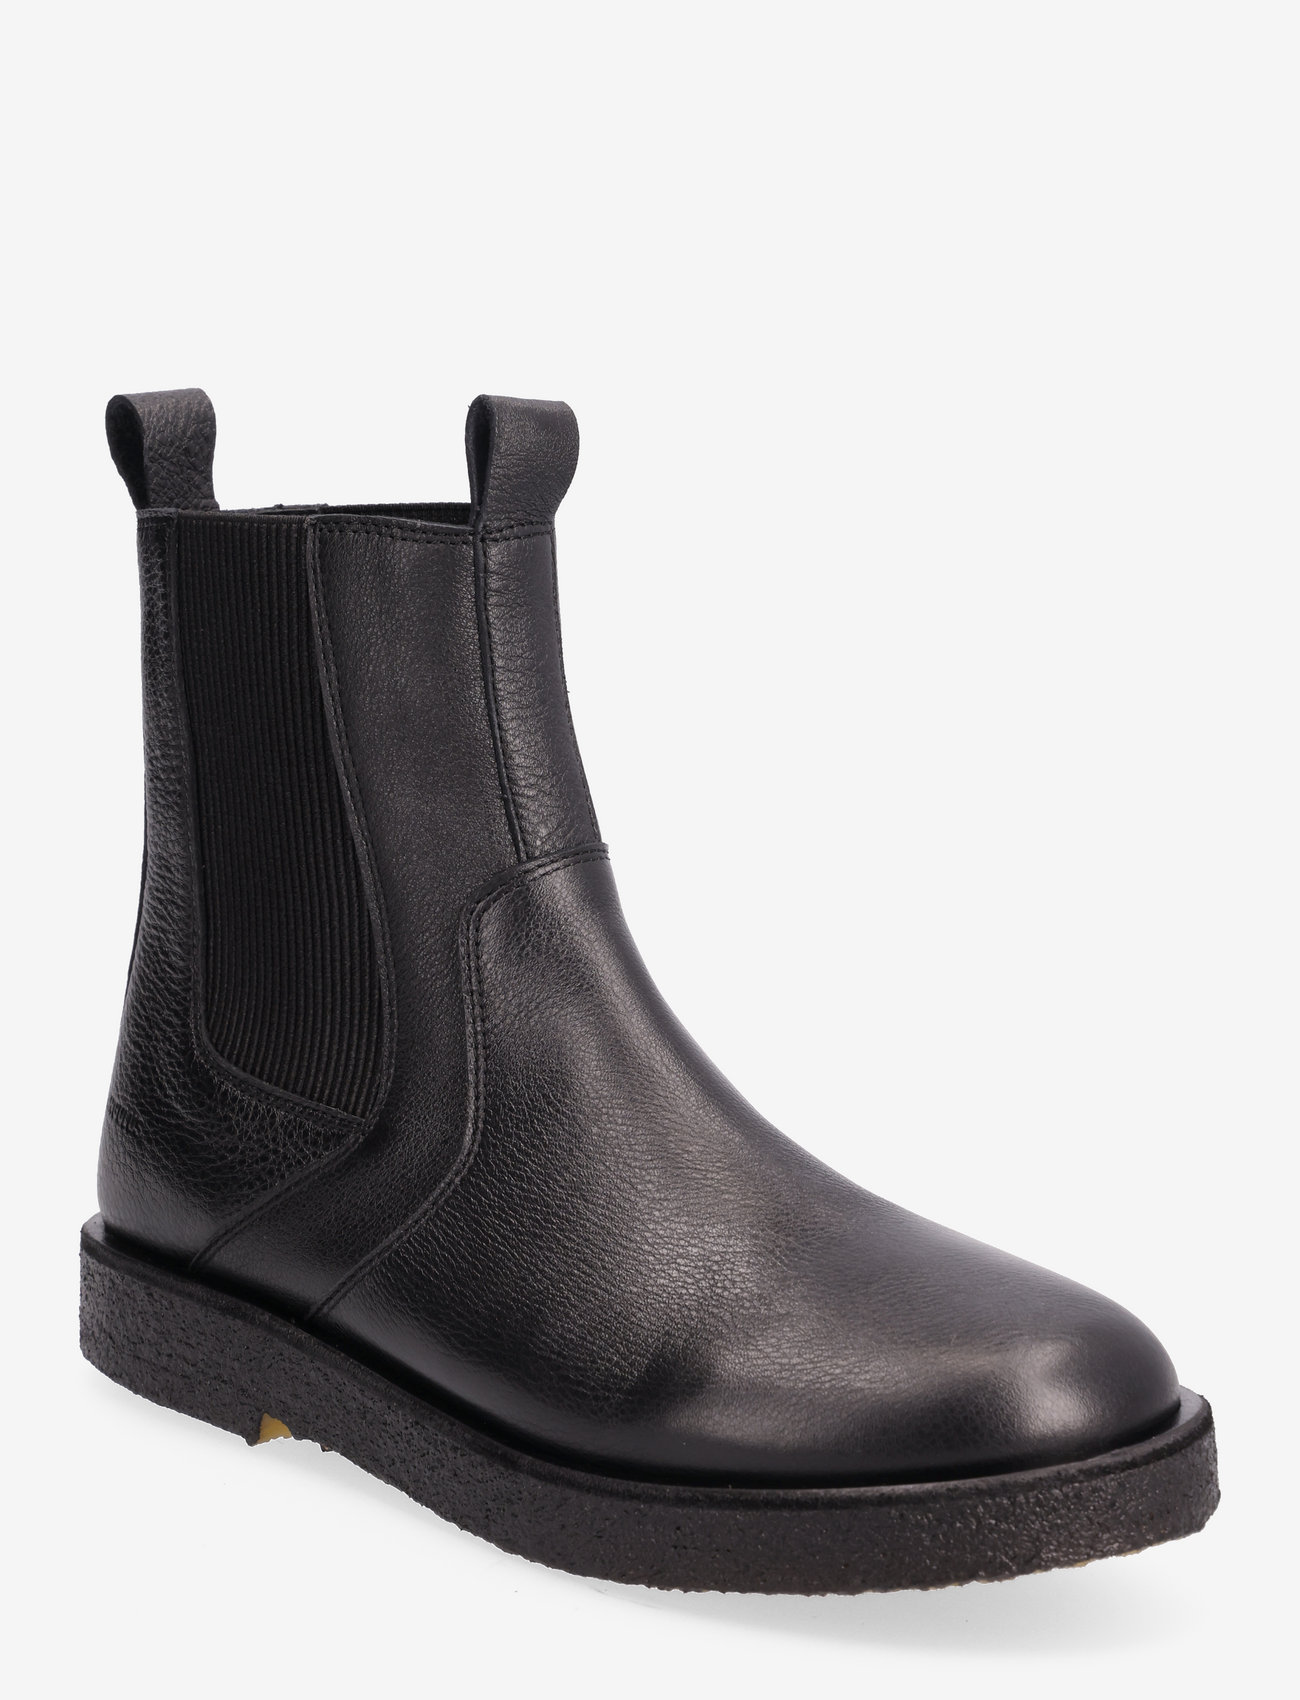 ANGULUS - Boots - flat - chelsea boots - 1933/019 black/black - 0